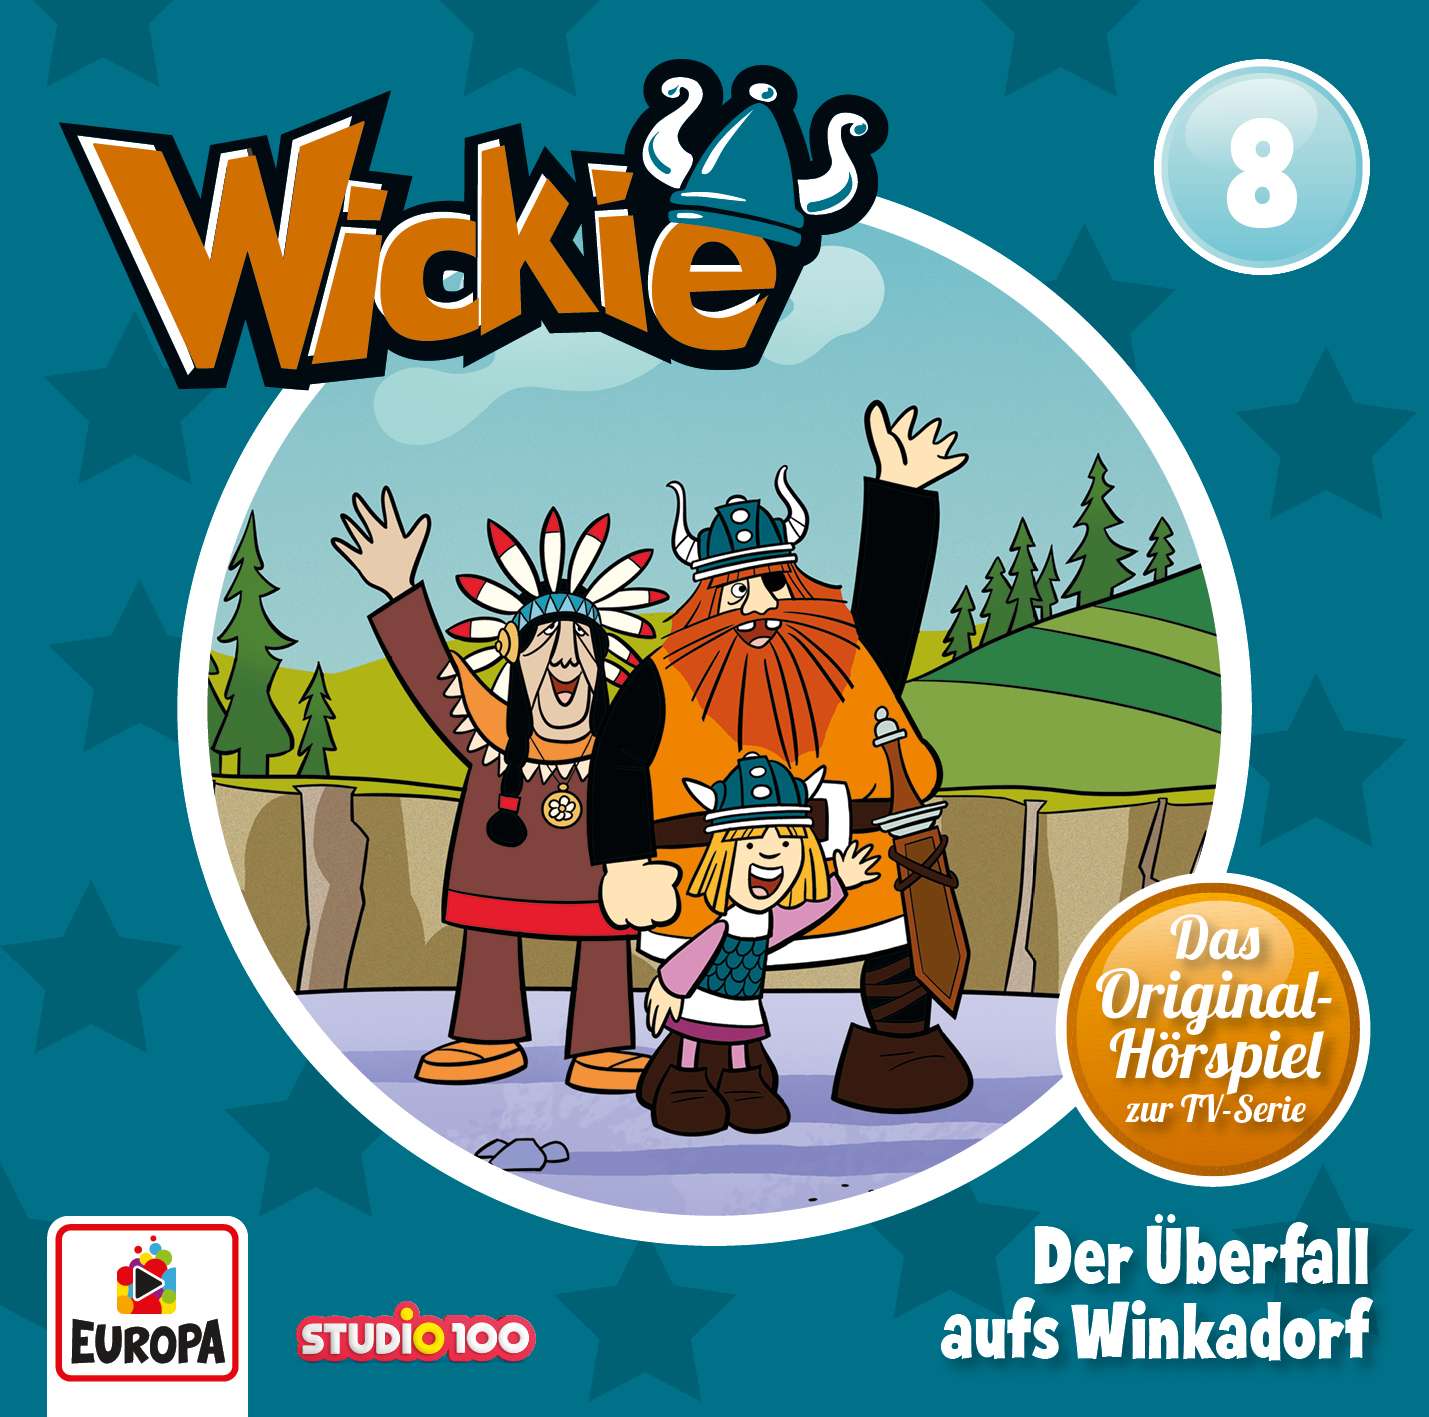 Wickie - Der Überfall aufs Winkadorf